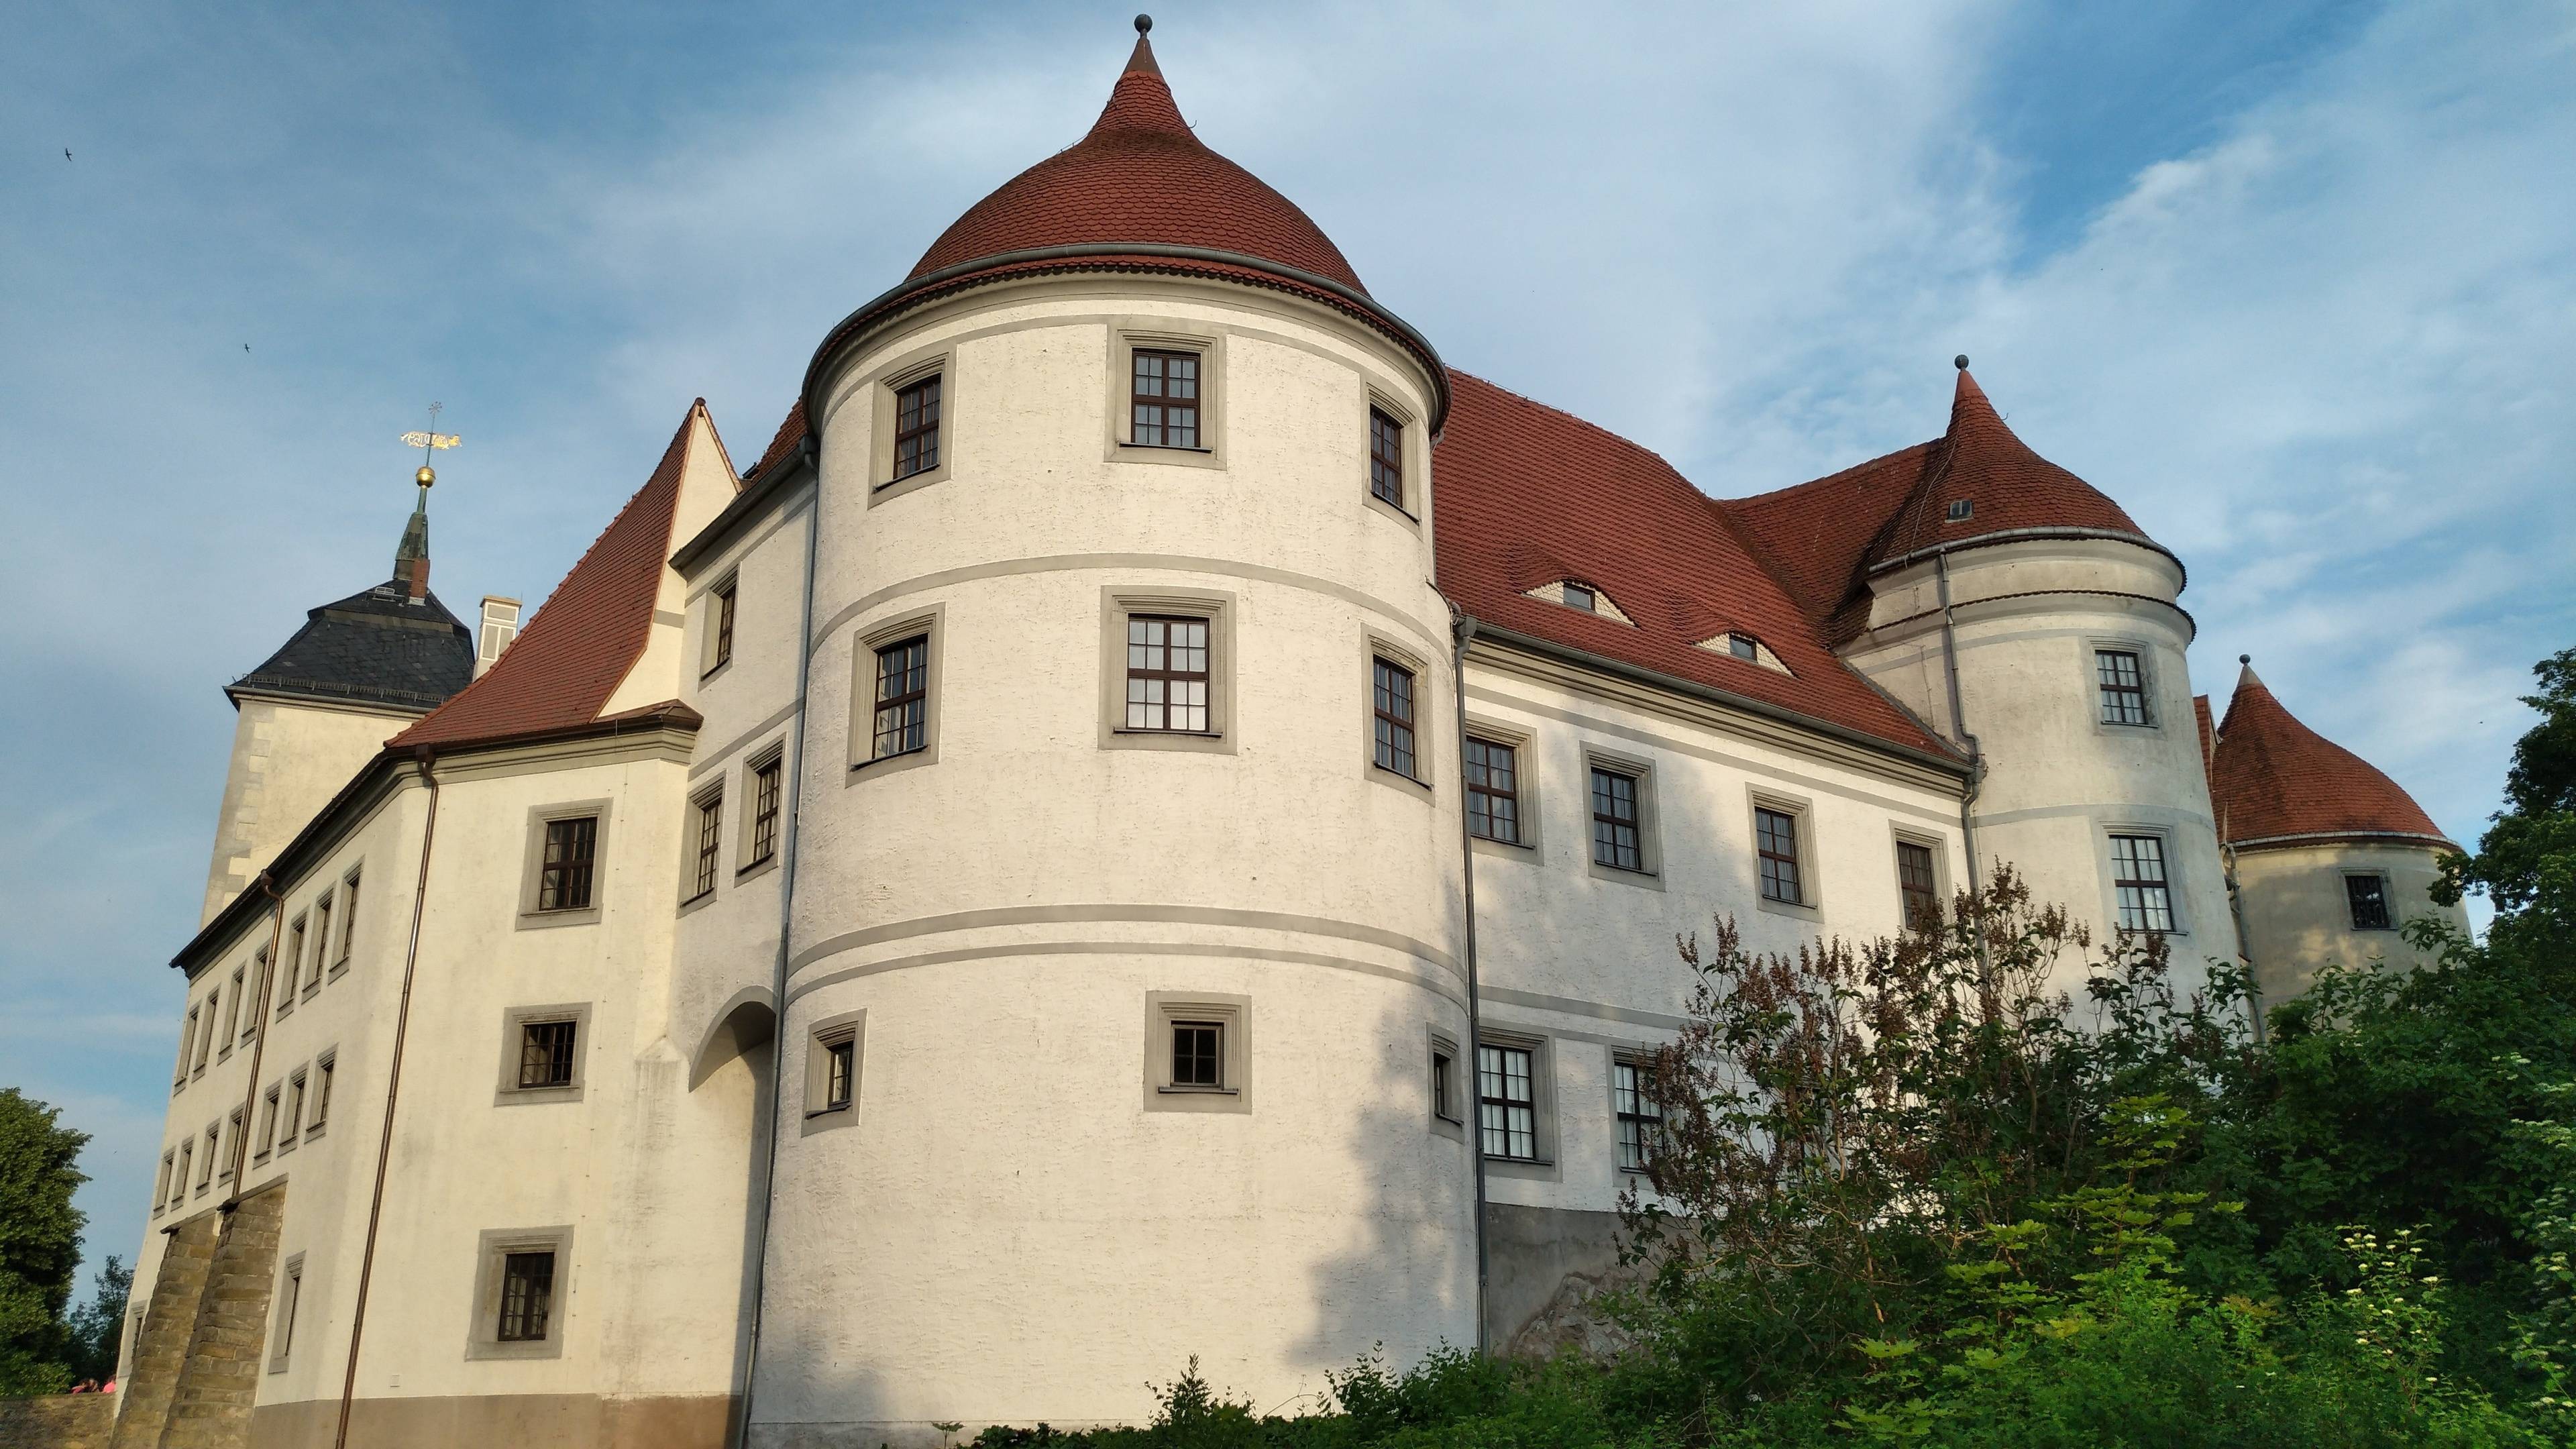 Nossen Castle